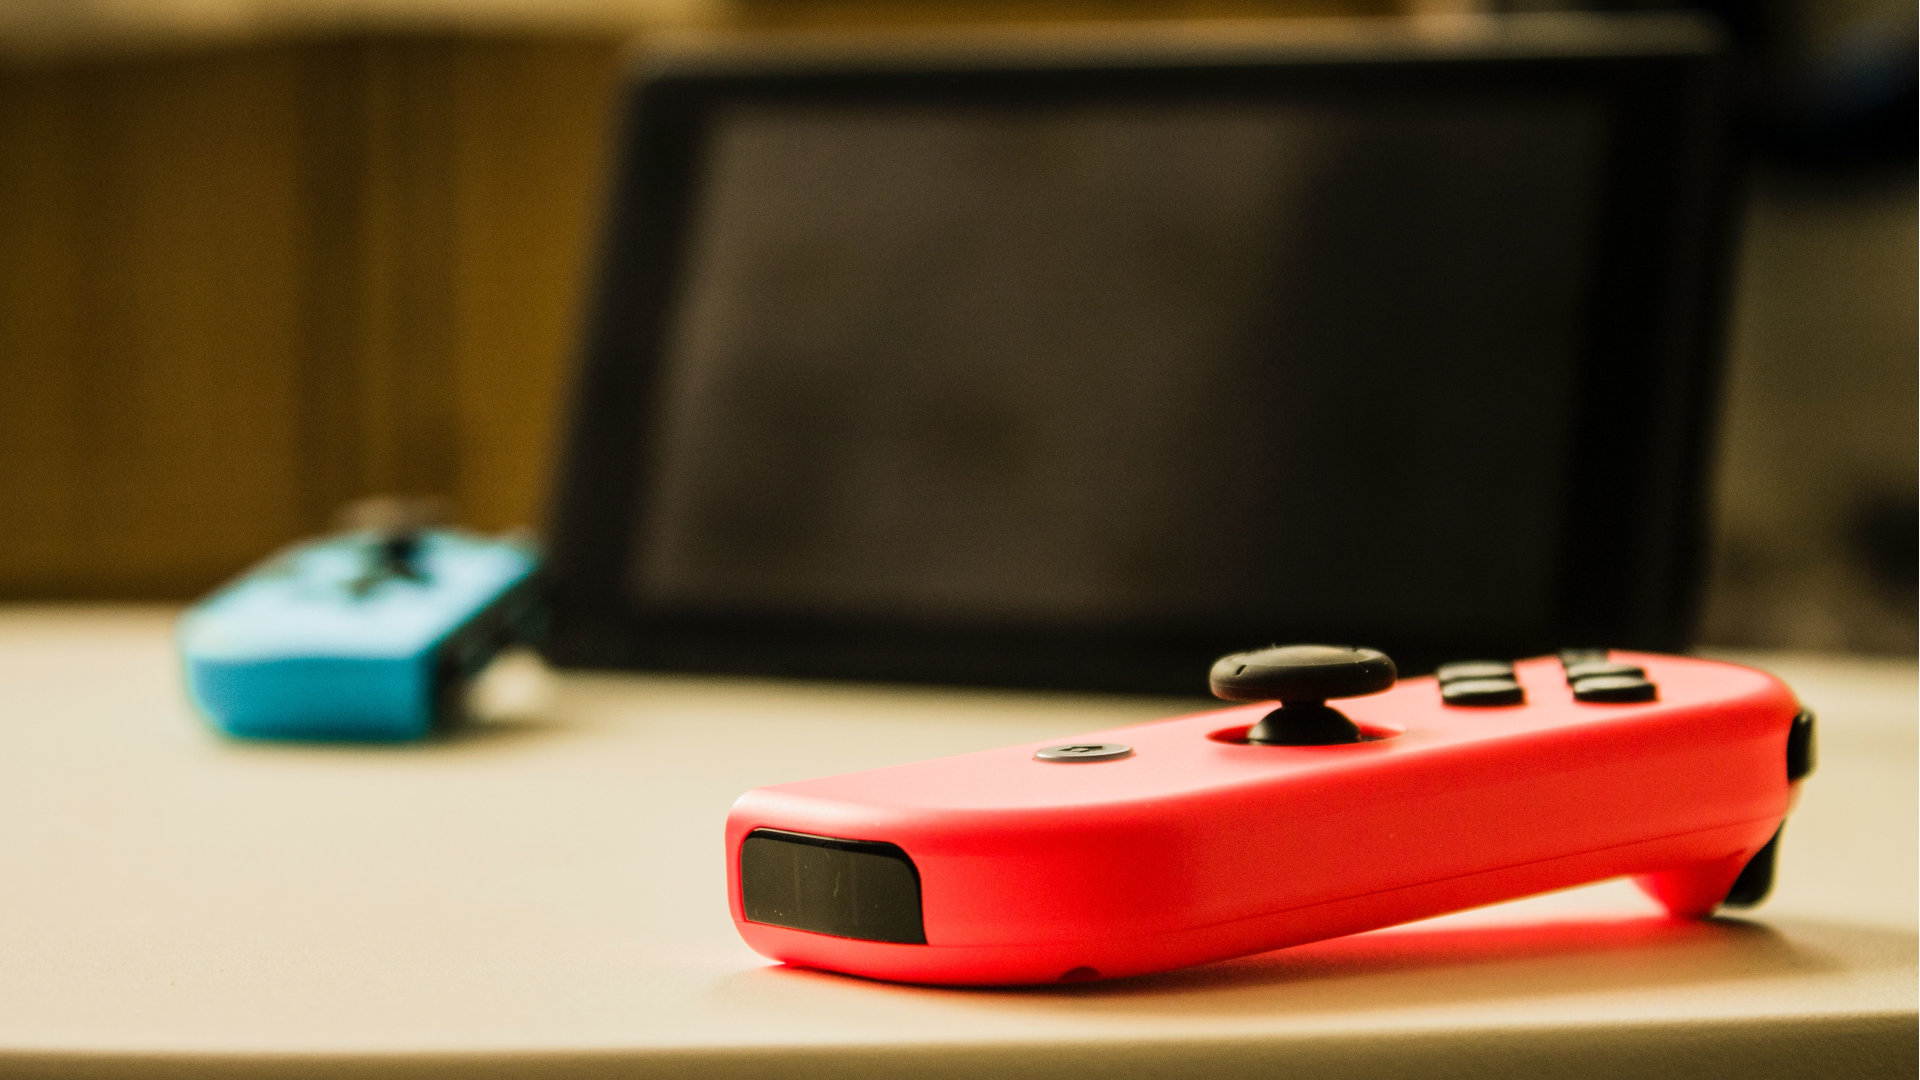 Неоново-красный Joy-Con на столе на переднем плане, с экраном Nintendo Switch и синим Joy-Con, лежащим на столе на заднем плане, немного не в фокусе